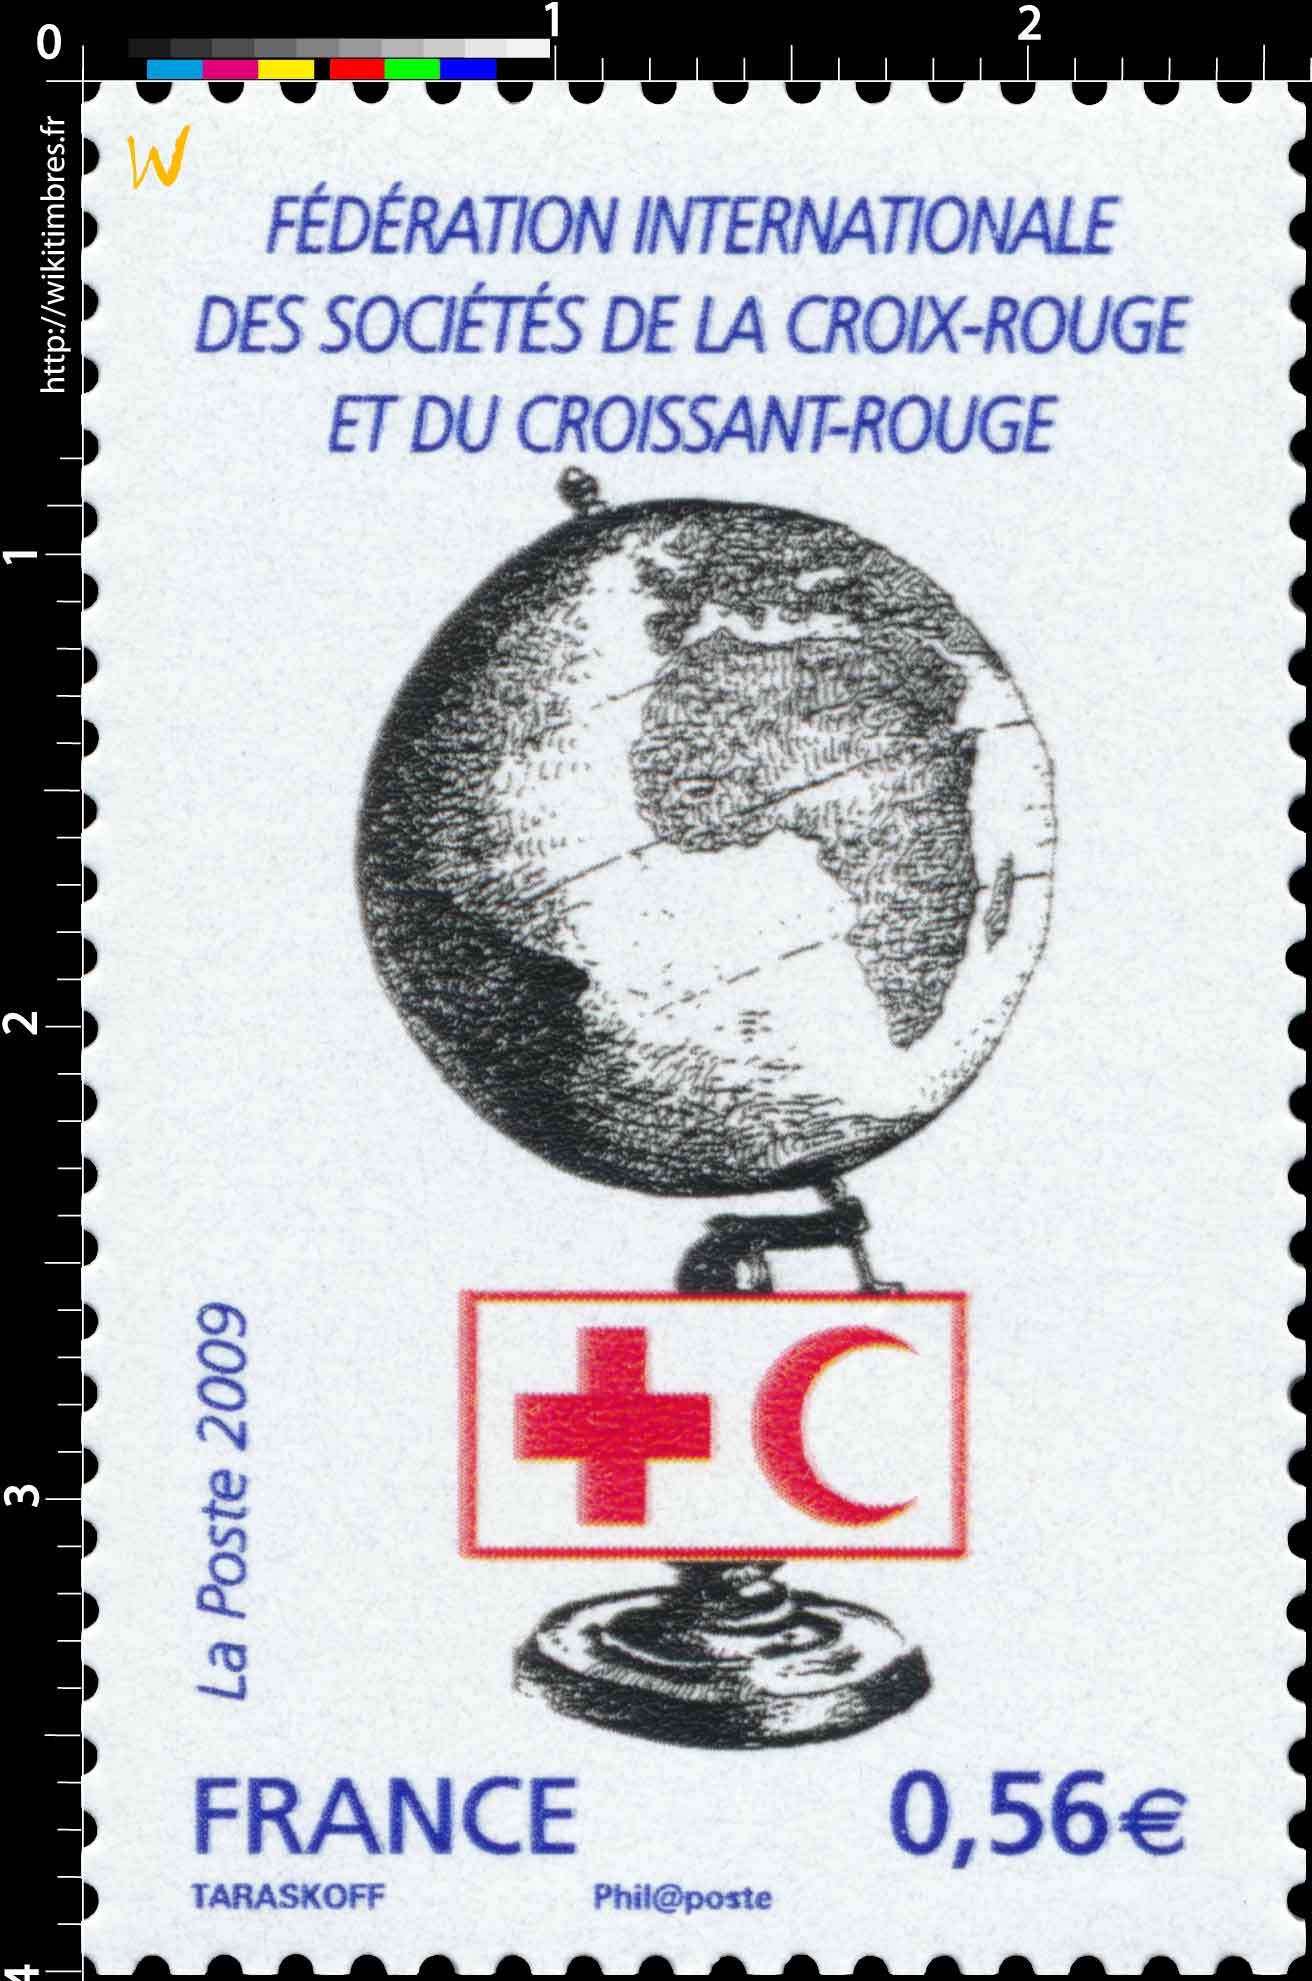 2009 FÉDÉRATION INTERNATIONALE DES SOCIÉTÉS DE LA CROIX-ROUGE ET DU CROISSANT-ROUGE